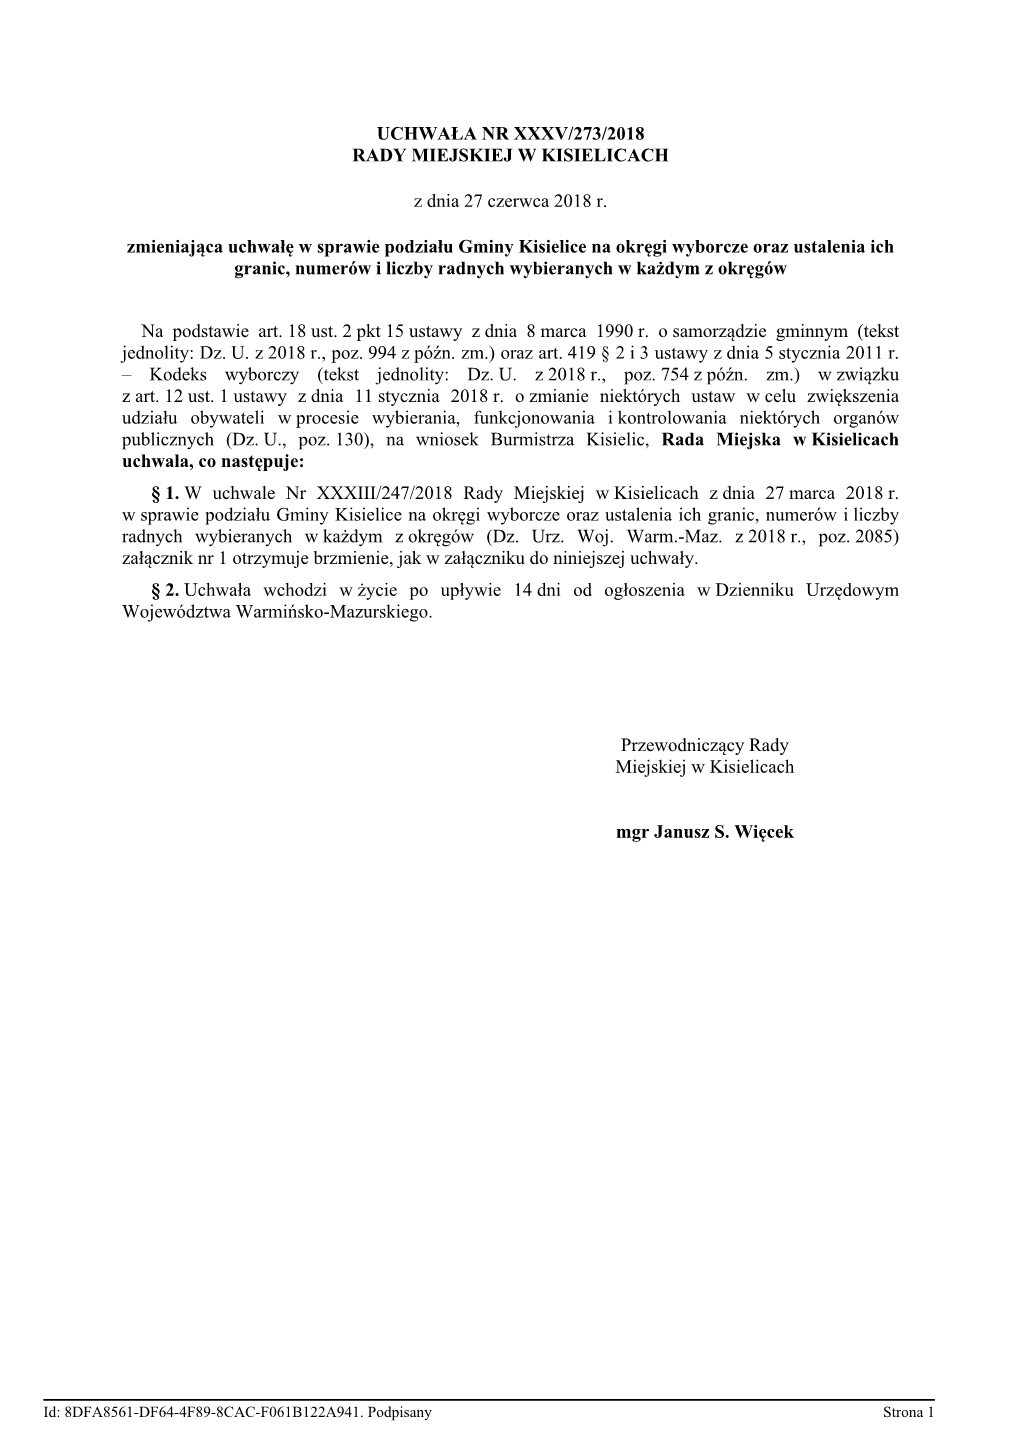 Uchwała Nr Xxxv/273/2018 Rady Miejskiej W Kisielicach